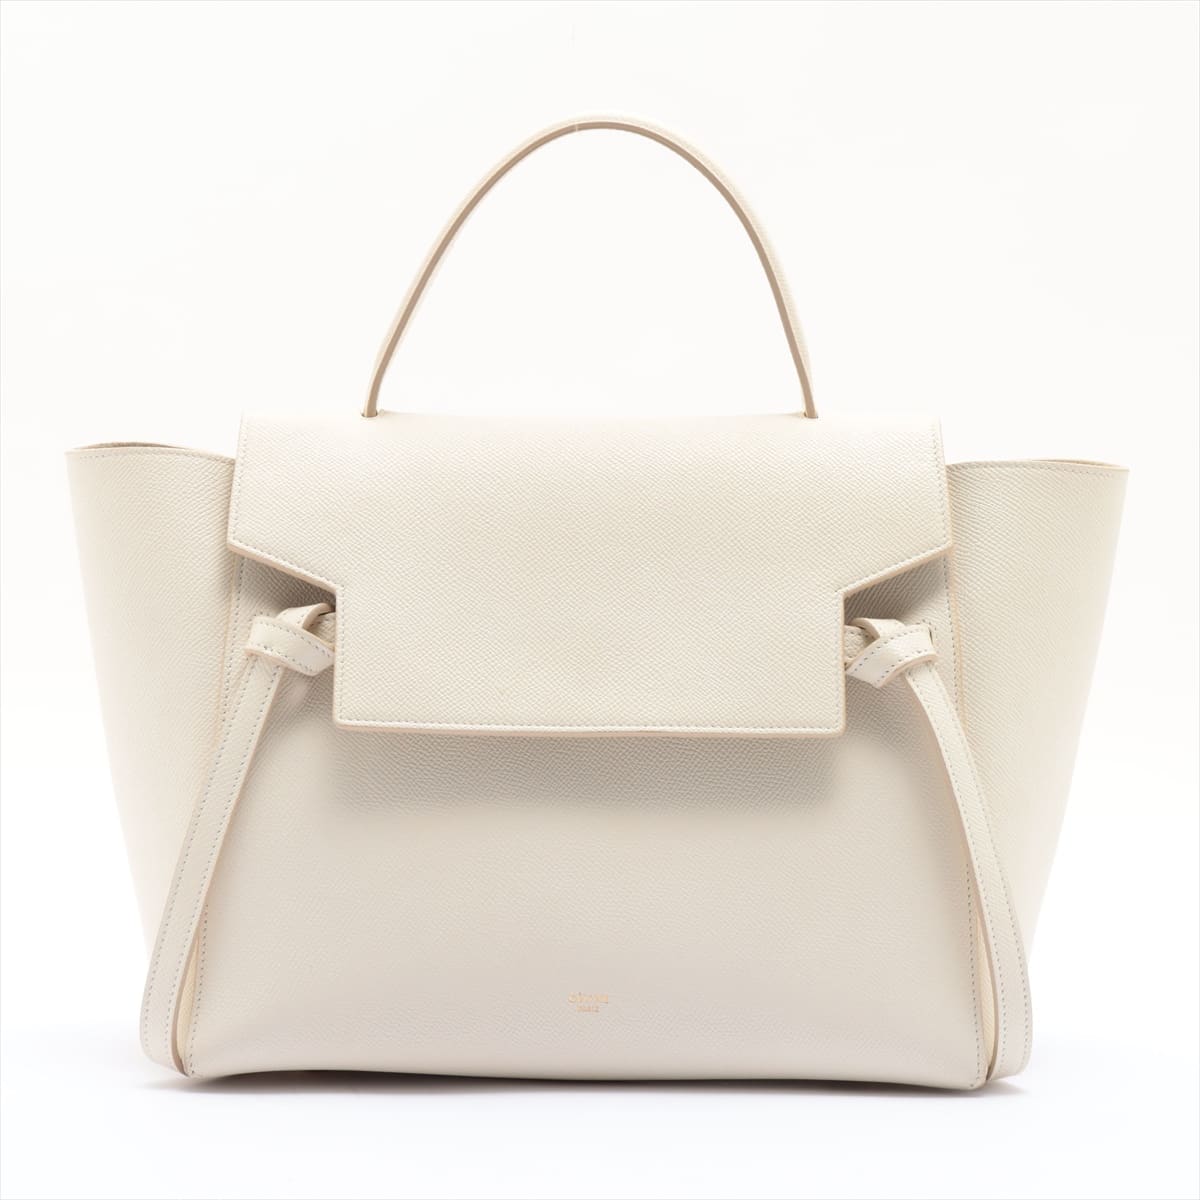 CELINE Belt Bag Mini Leather 2way shoulder bag White